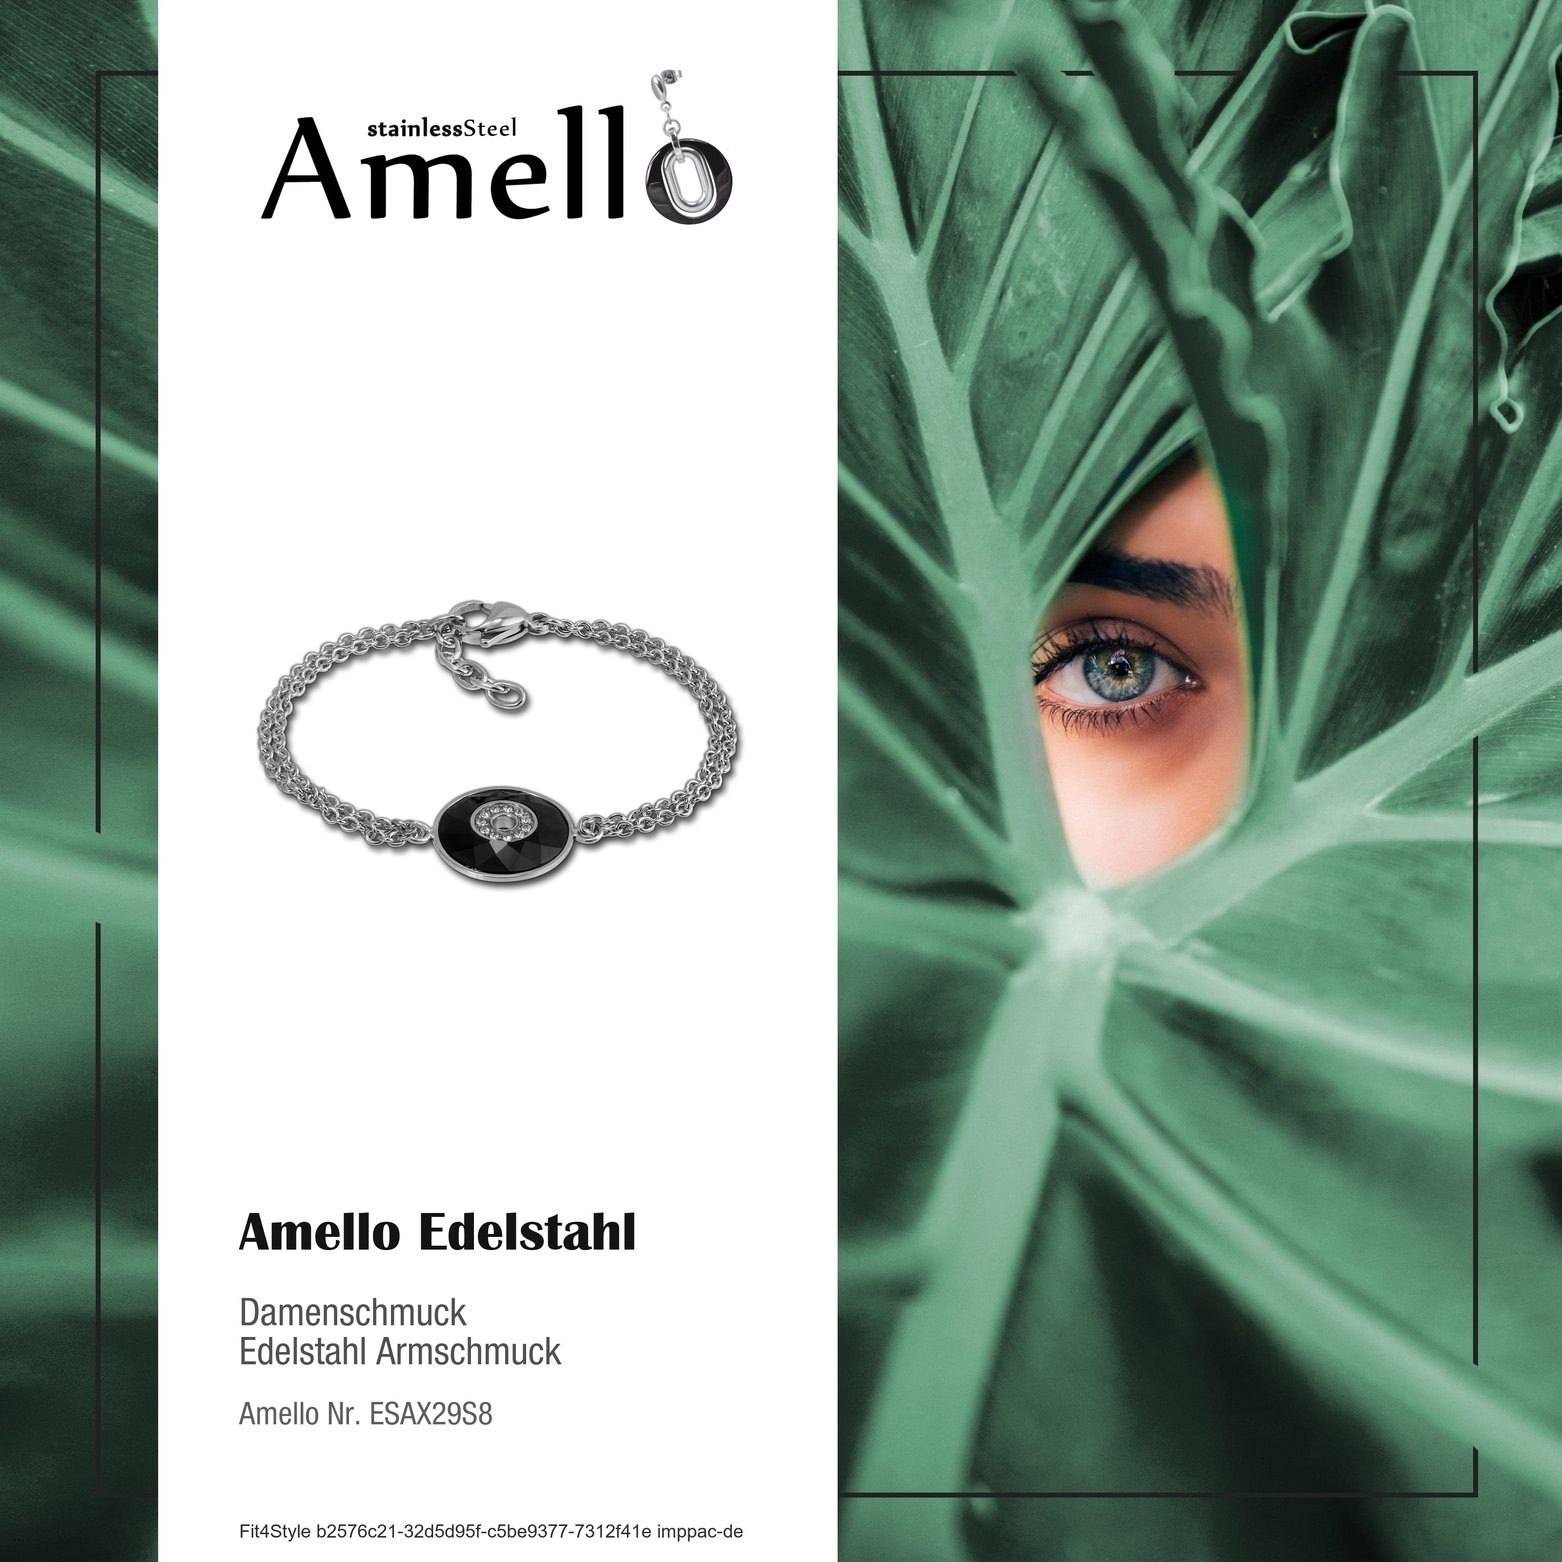 Rund Amello Edelstahl schwarz Edelstahlarmband Armband Damen silber (Armband), Amello Steel) Armbänder für (Stainless